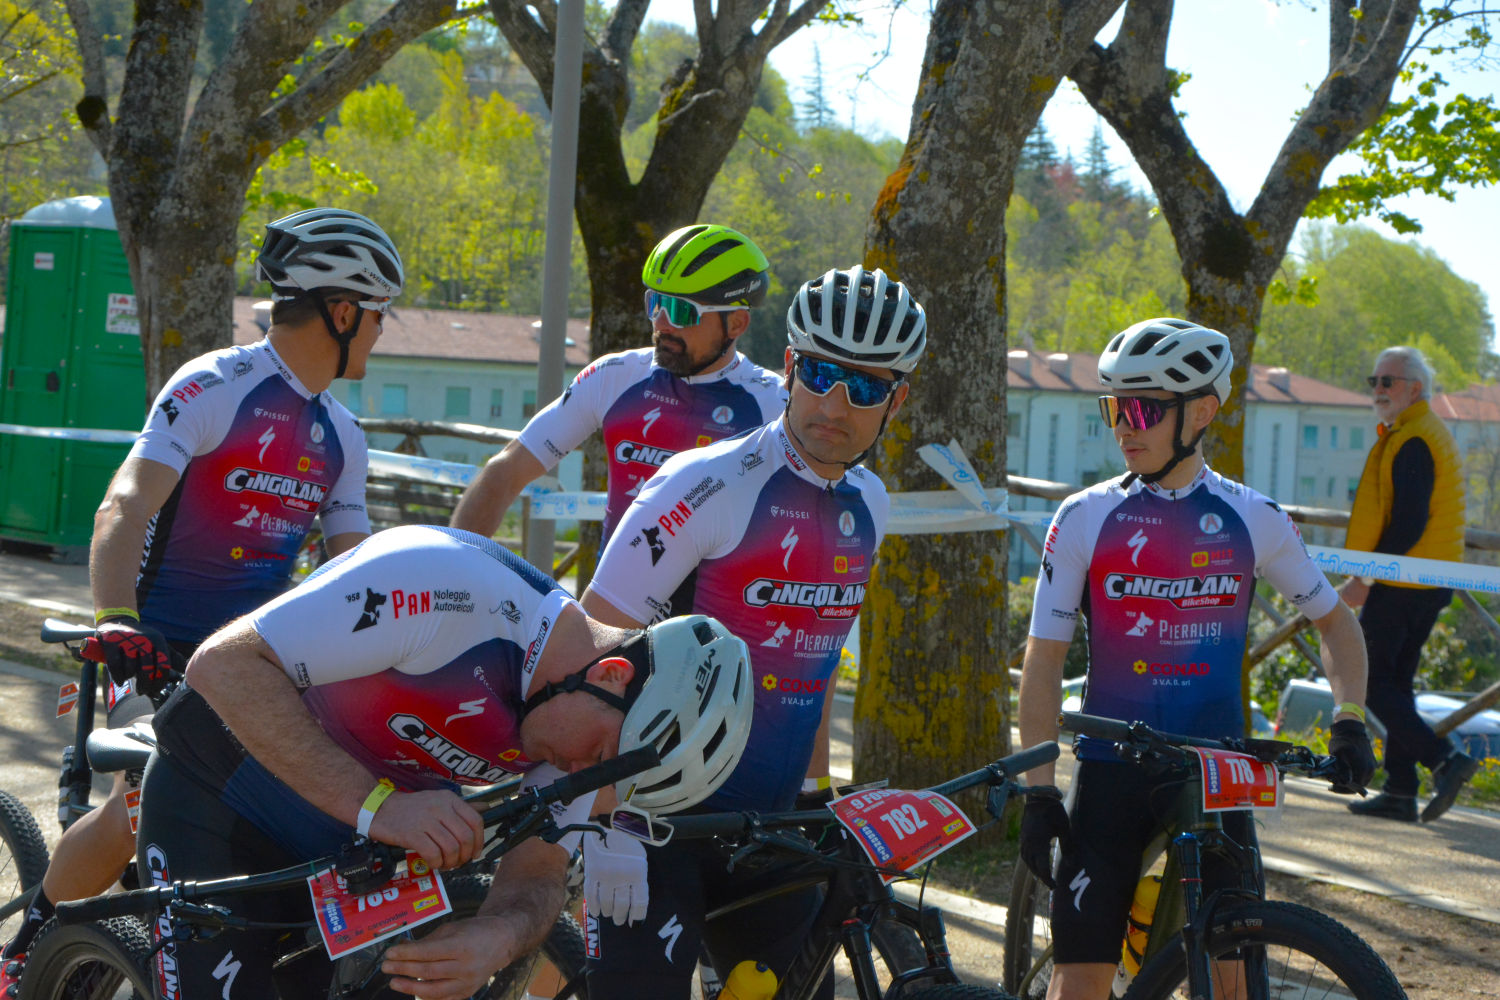 Cicli Cingolani al via di una nuova stagione nel Tour3Regioni